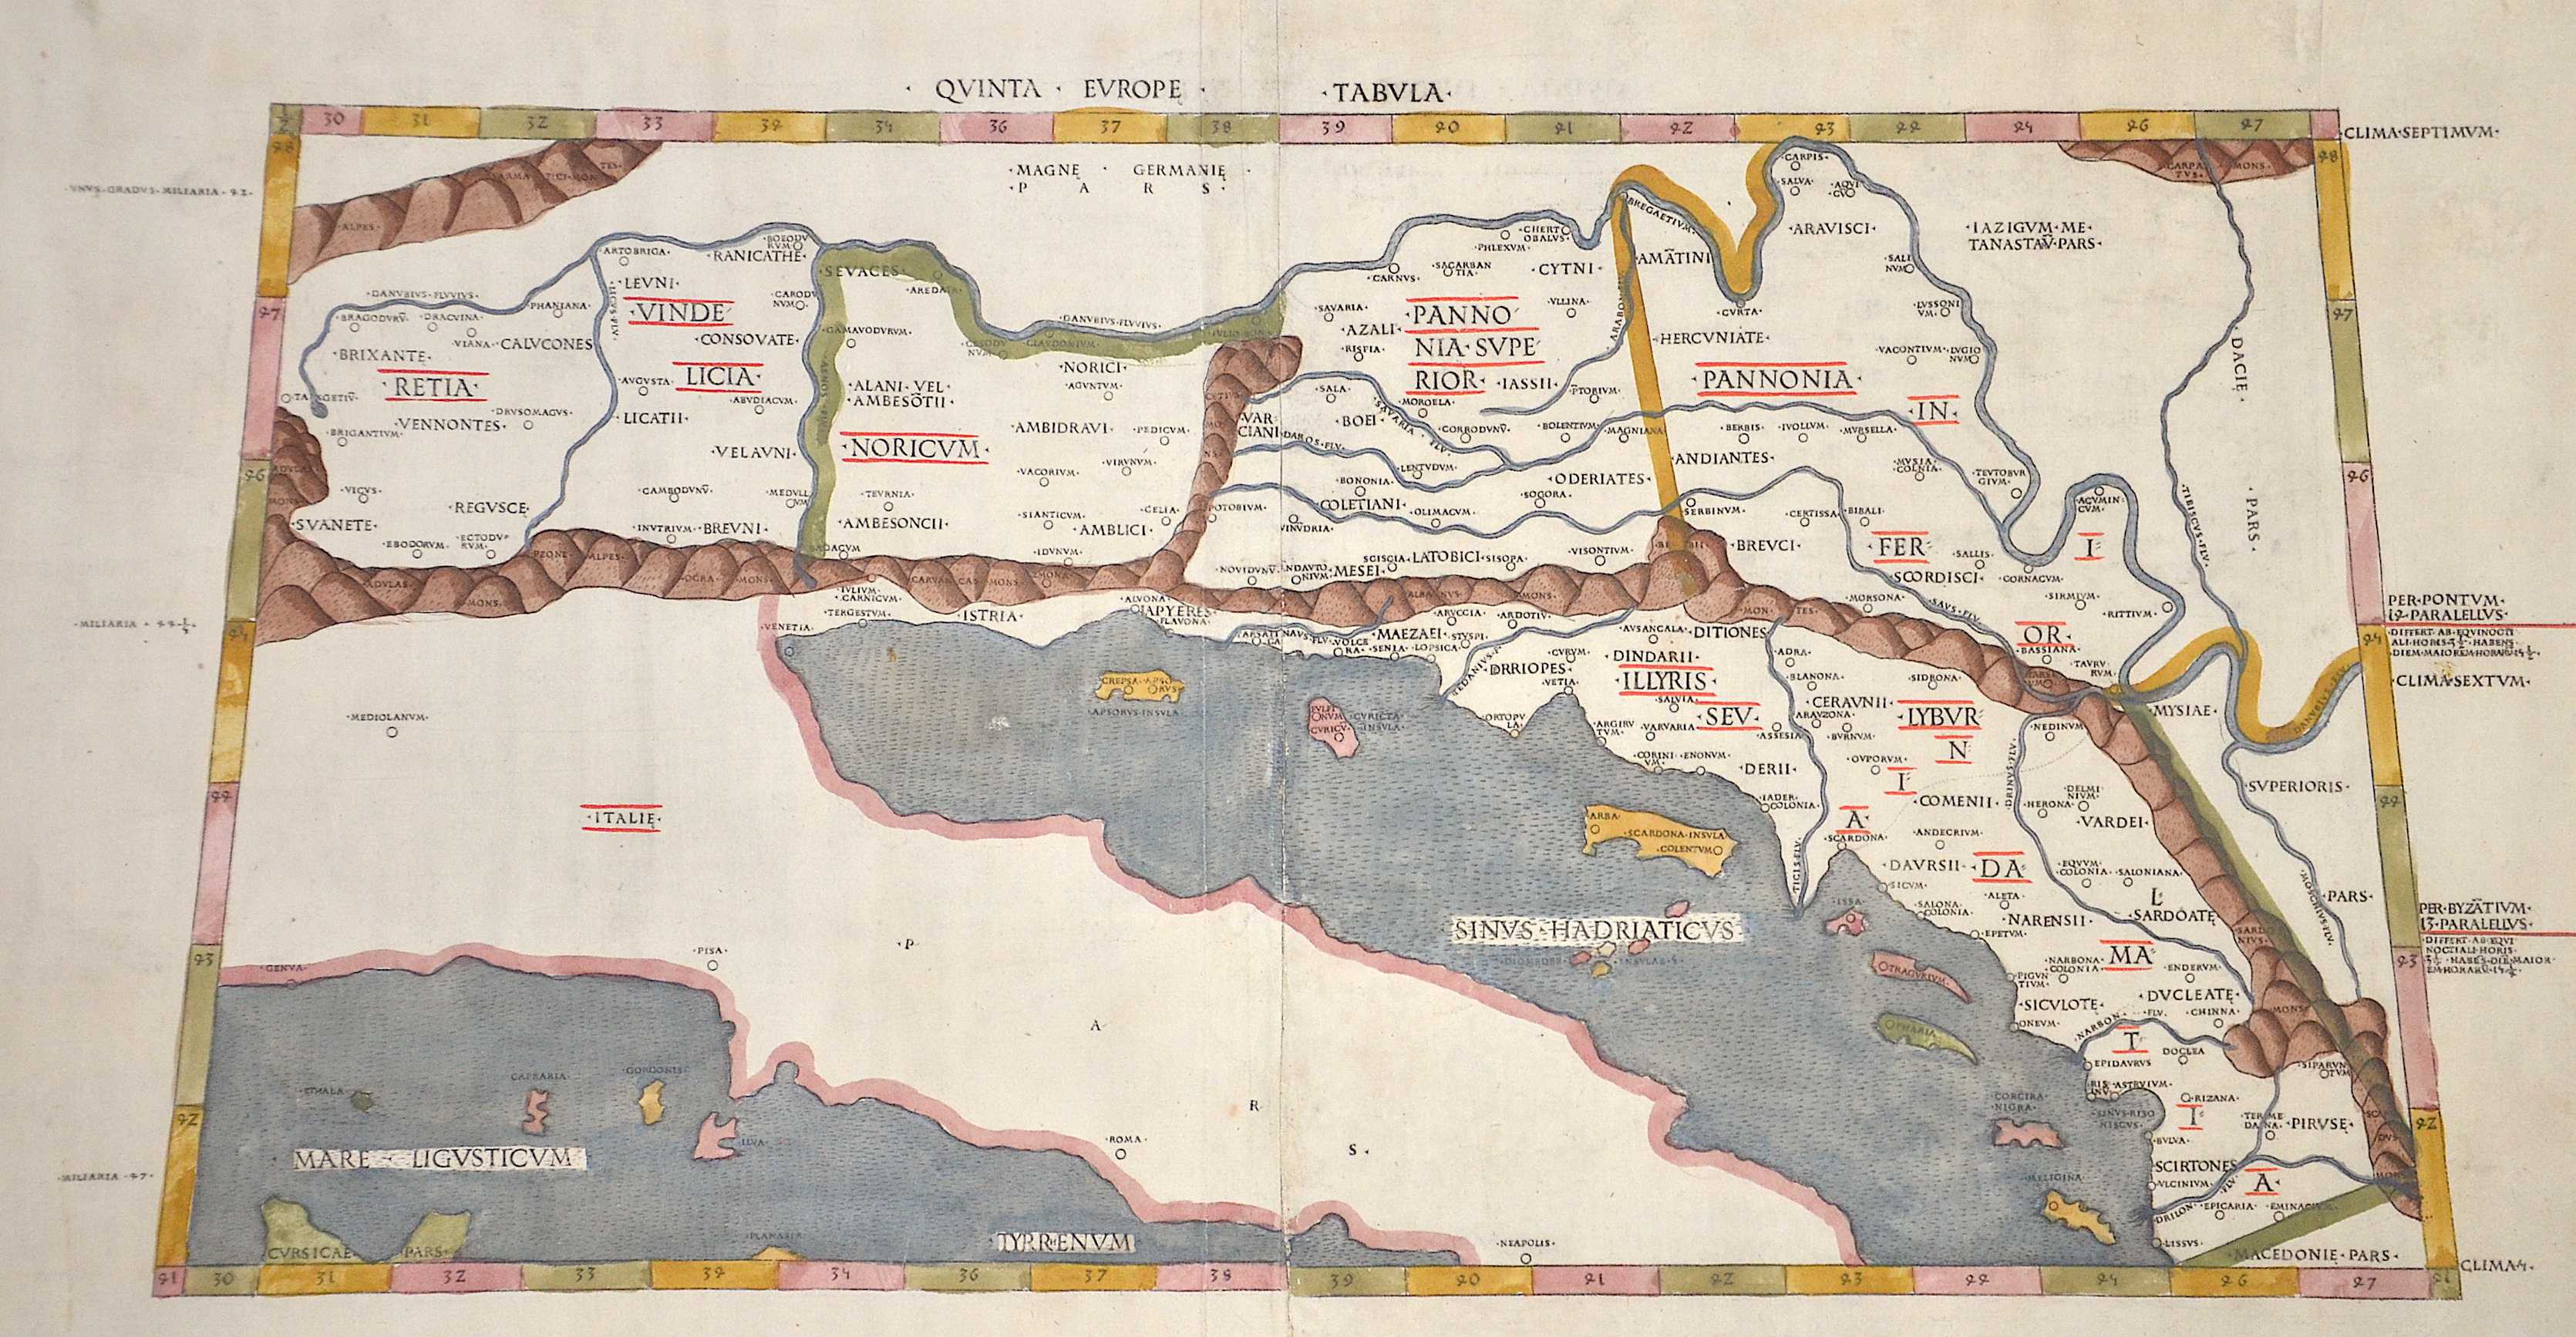 Ptolemy/ Petrus de Turre Claudius Quinta Europe tabula